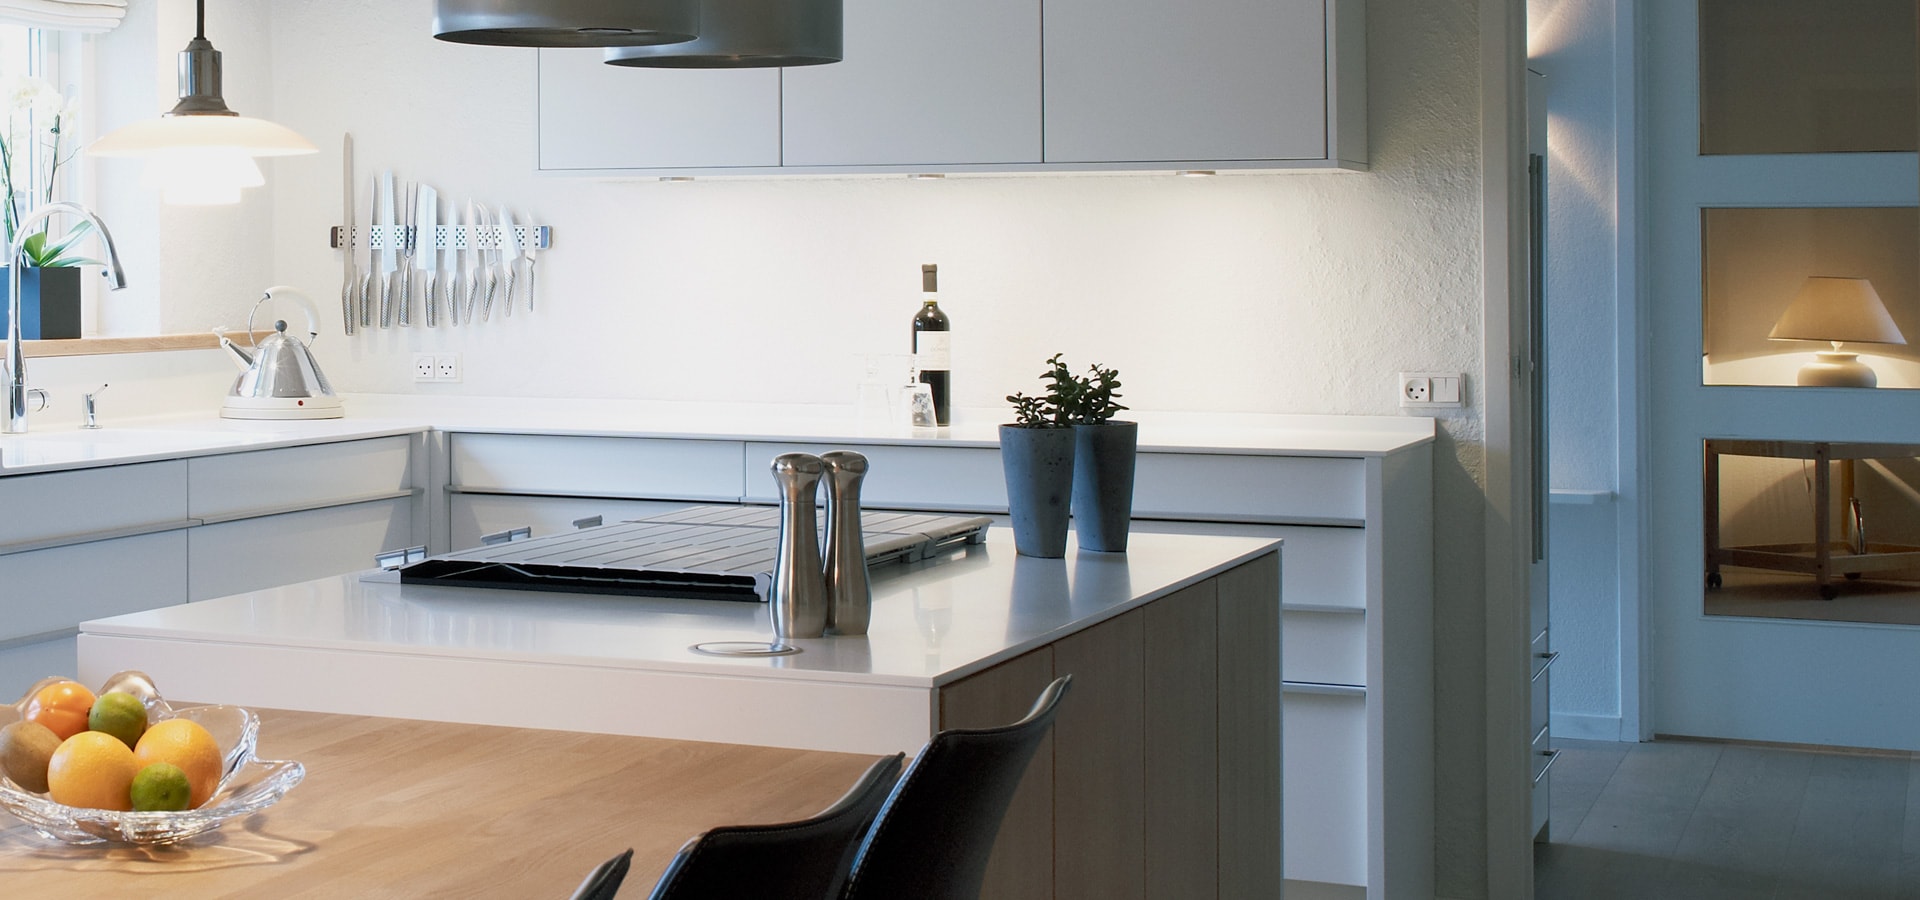 Exclusive kitchen design – Nordic and simple | SONDERBORG KOKKEN